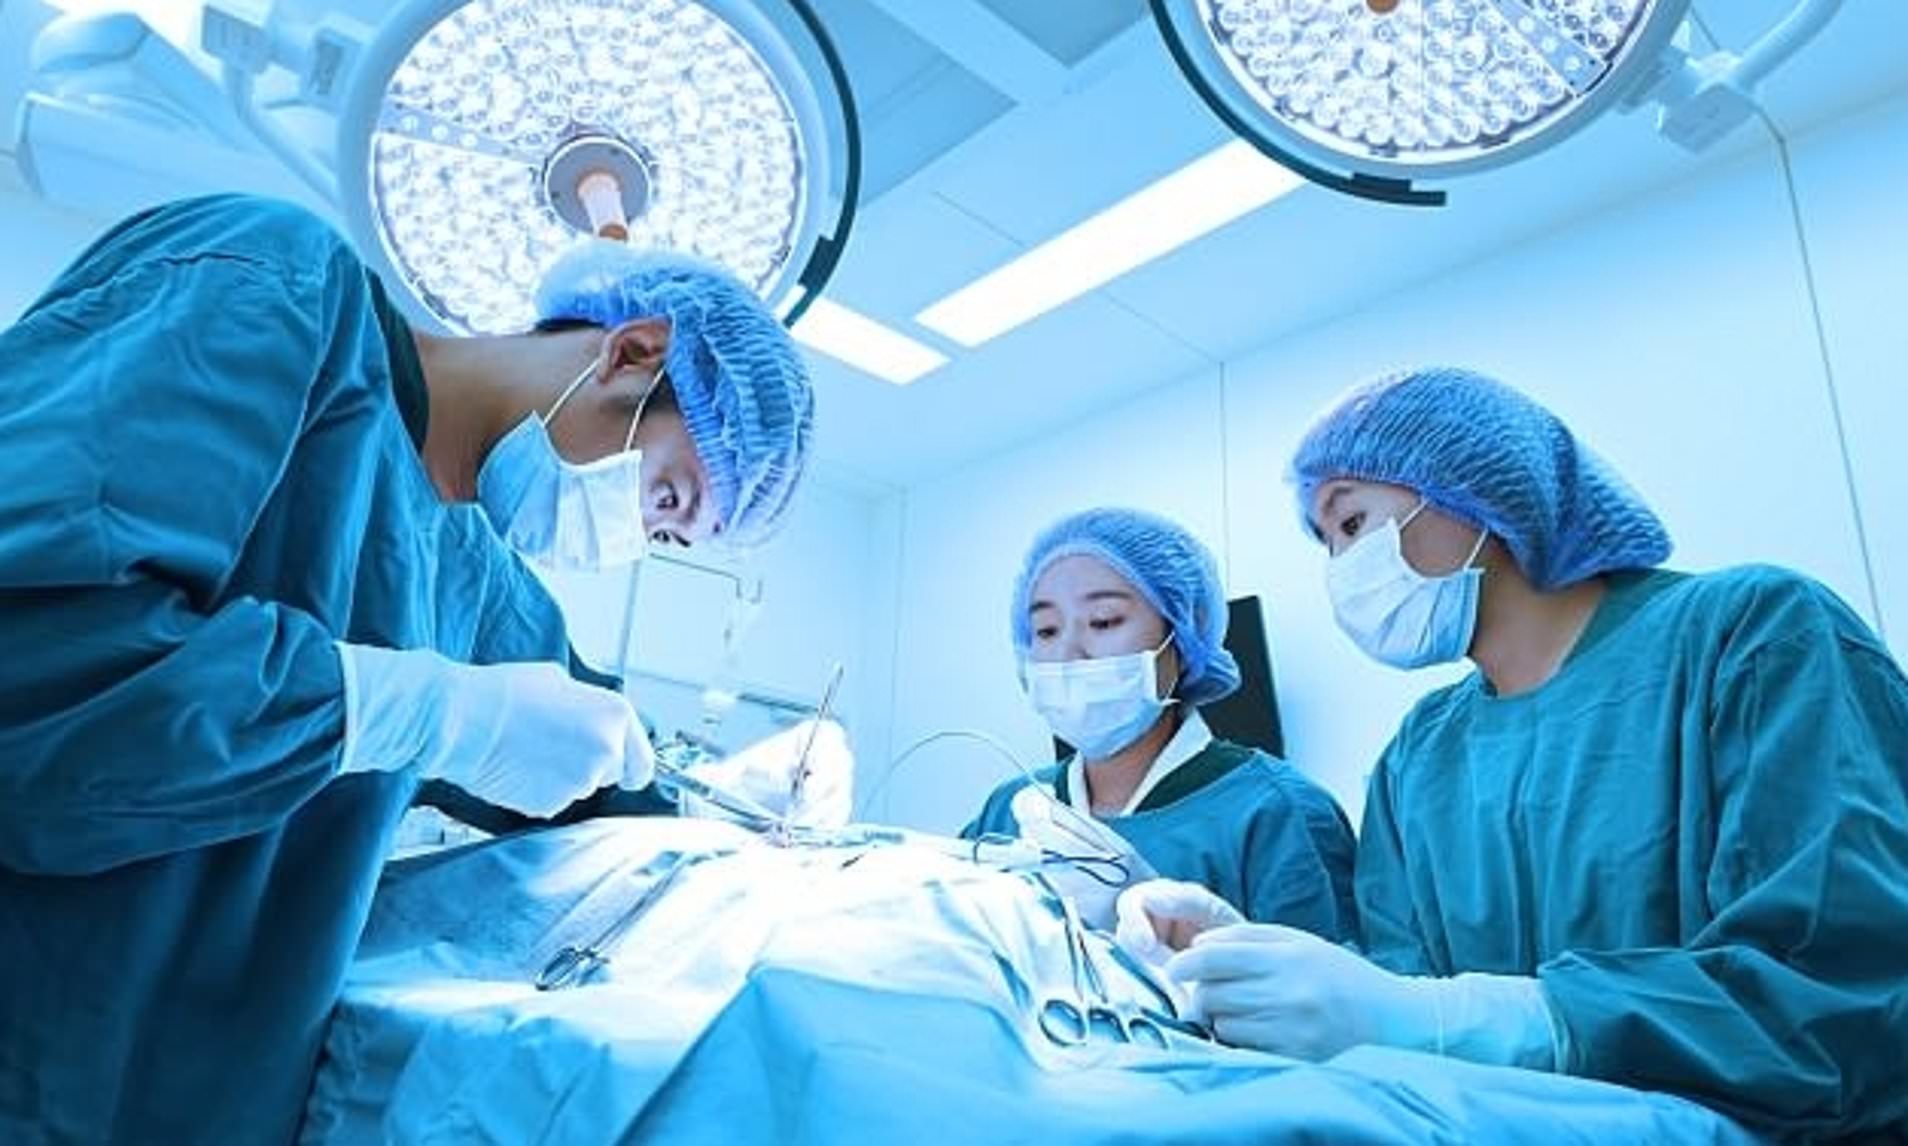 فريق طبي يجري عملية جراحية بإحدى المستفشيات الأميركية